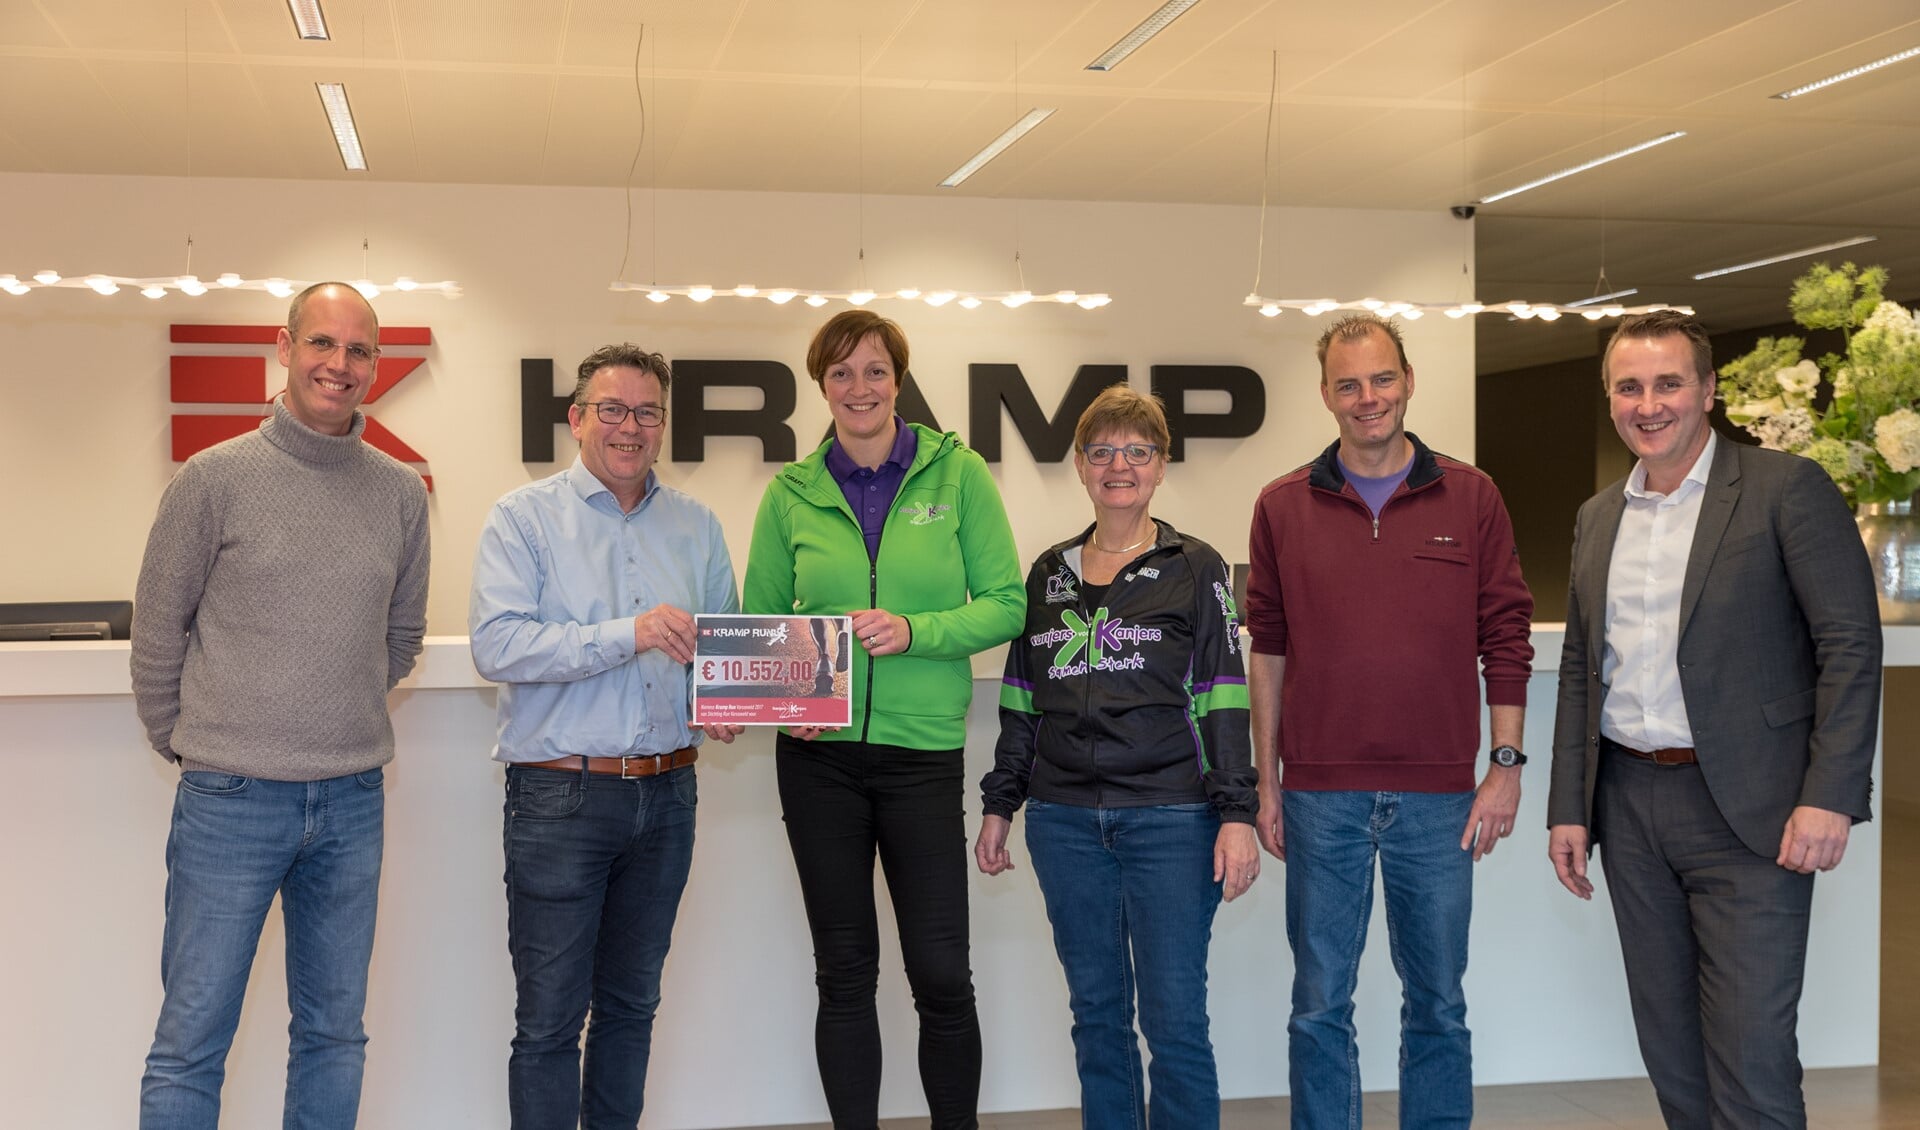 Bij sponsor Kramp werd de cheque van de Run uitgereikt aan Kanjers voor Kanjers. Foto: PR